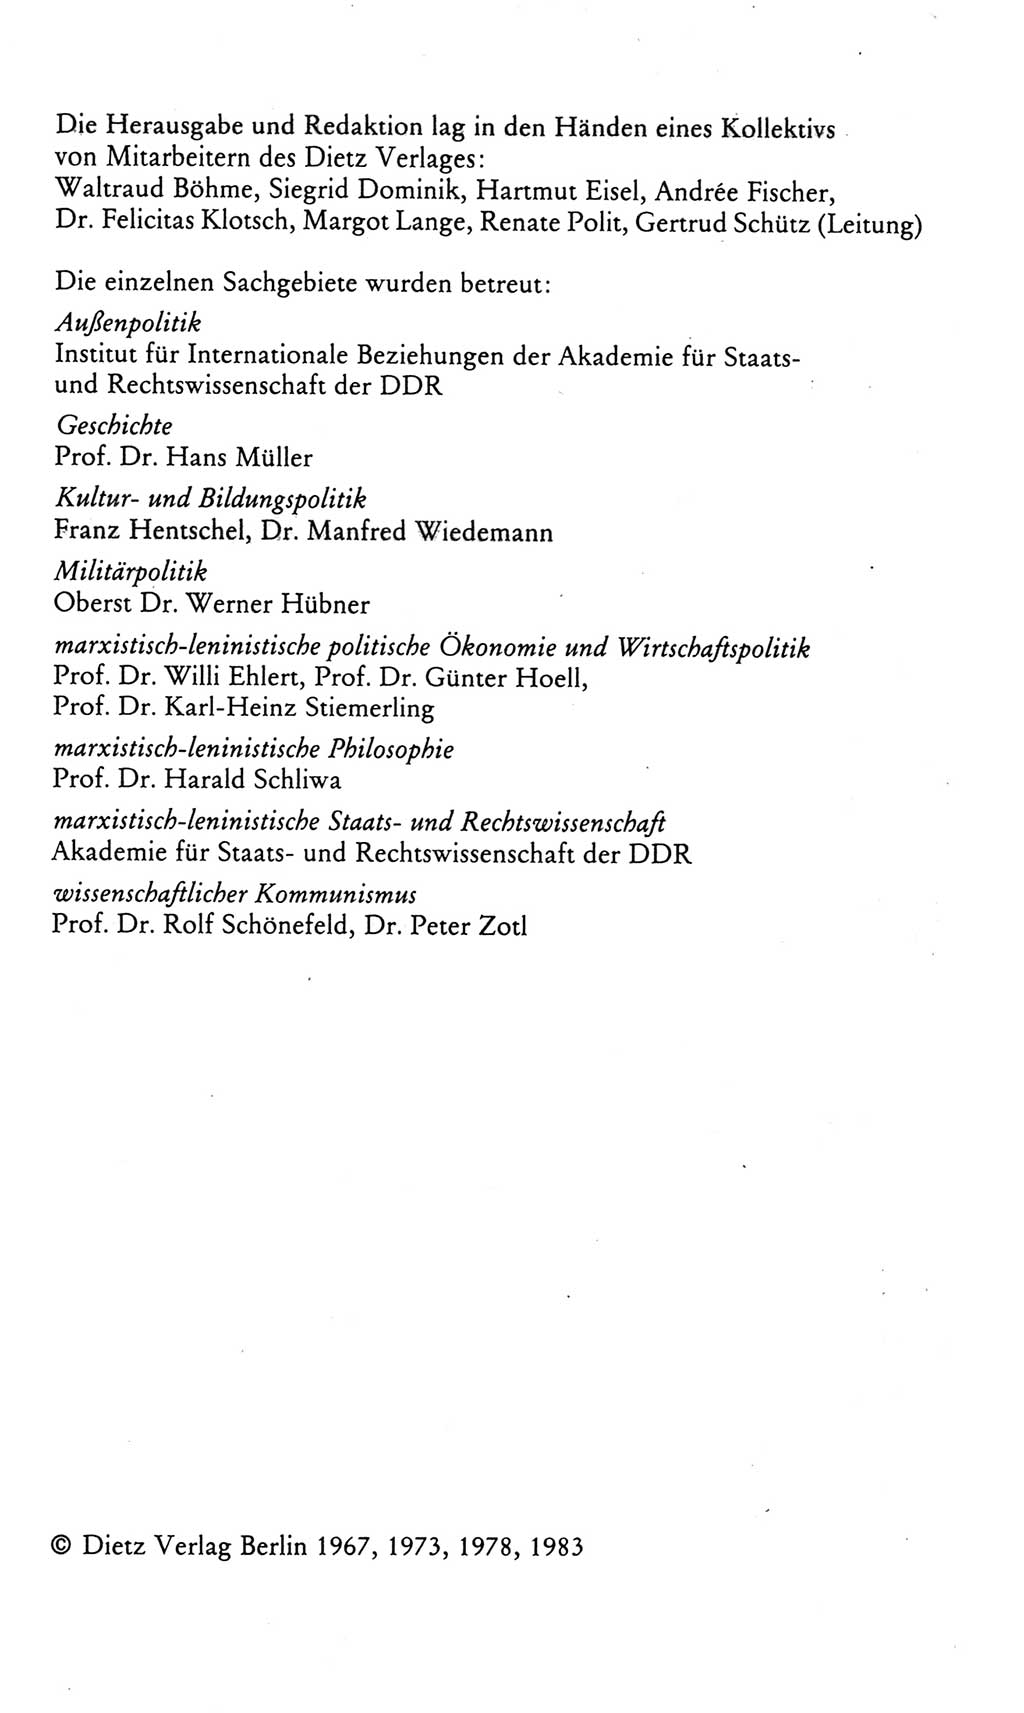 Kleines politisches Wörterbuch [Deutsche Demokratische Republik (DDR)] 1985, Seite 4 (Kl. pol. Wb. DDR 1985, S. 4)